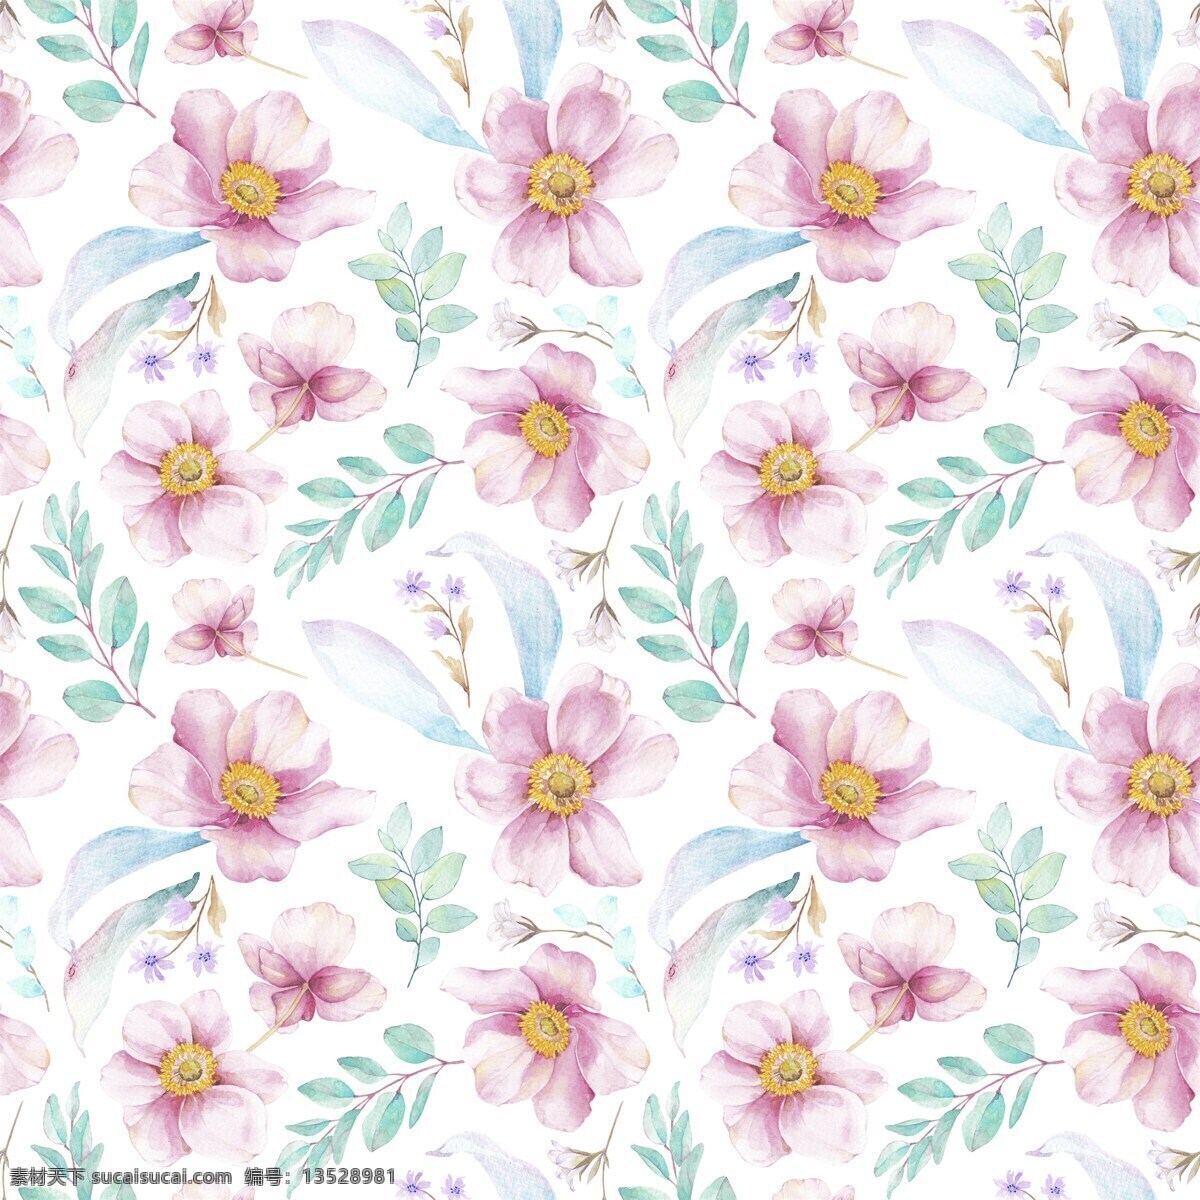 高雅 粉色 花卉 背景 填充 设计素材 背景素材